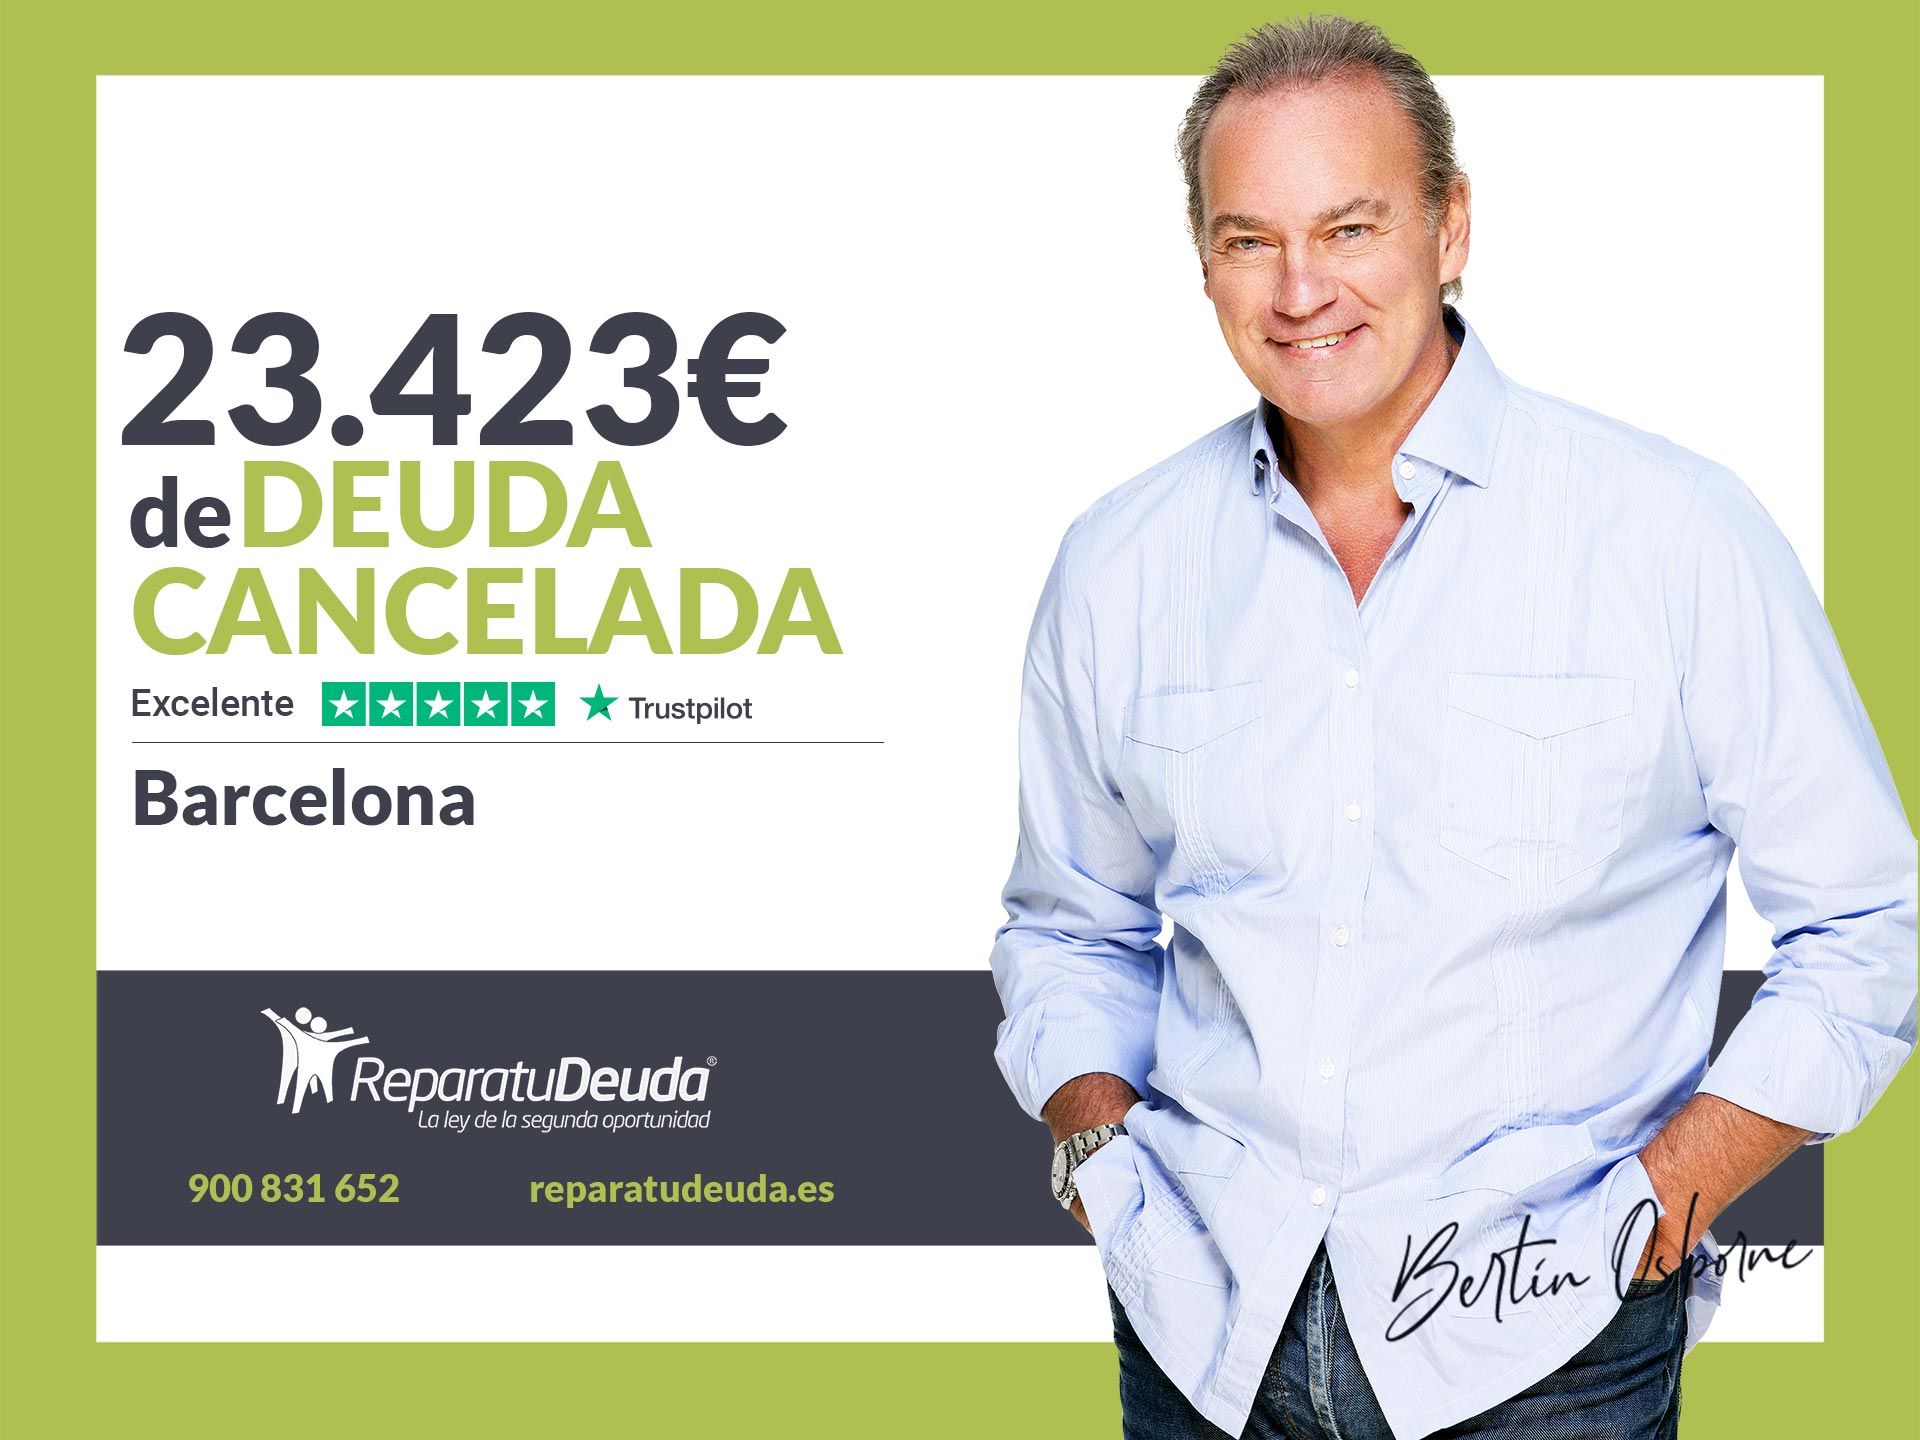 Repara tu Deuda Abogados cancela 23.423? en Barcelona (Catalunya) con la Ley de Segunda Oportunidad